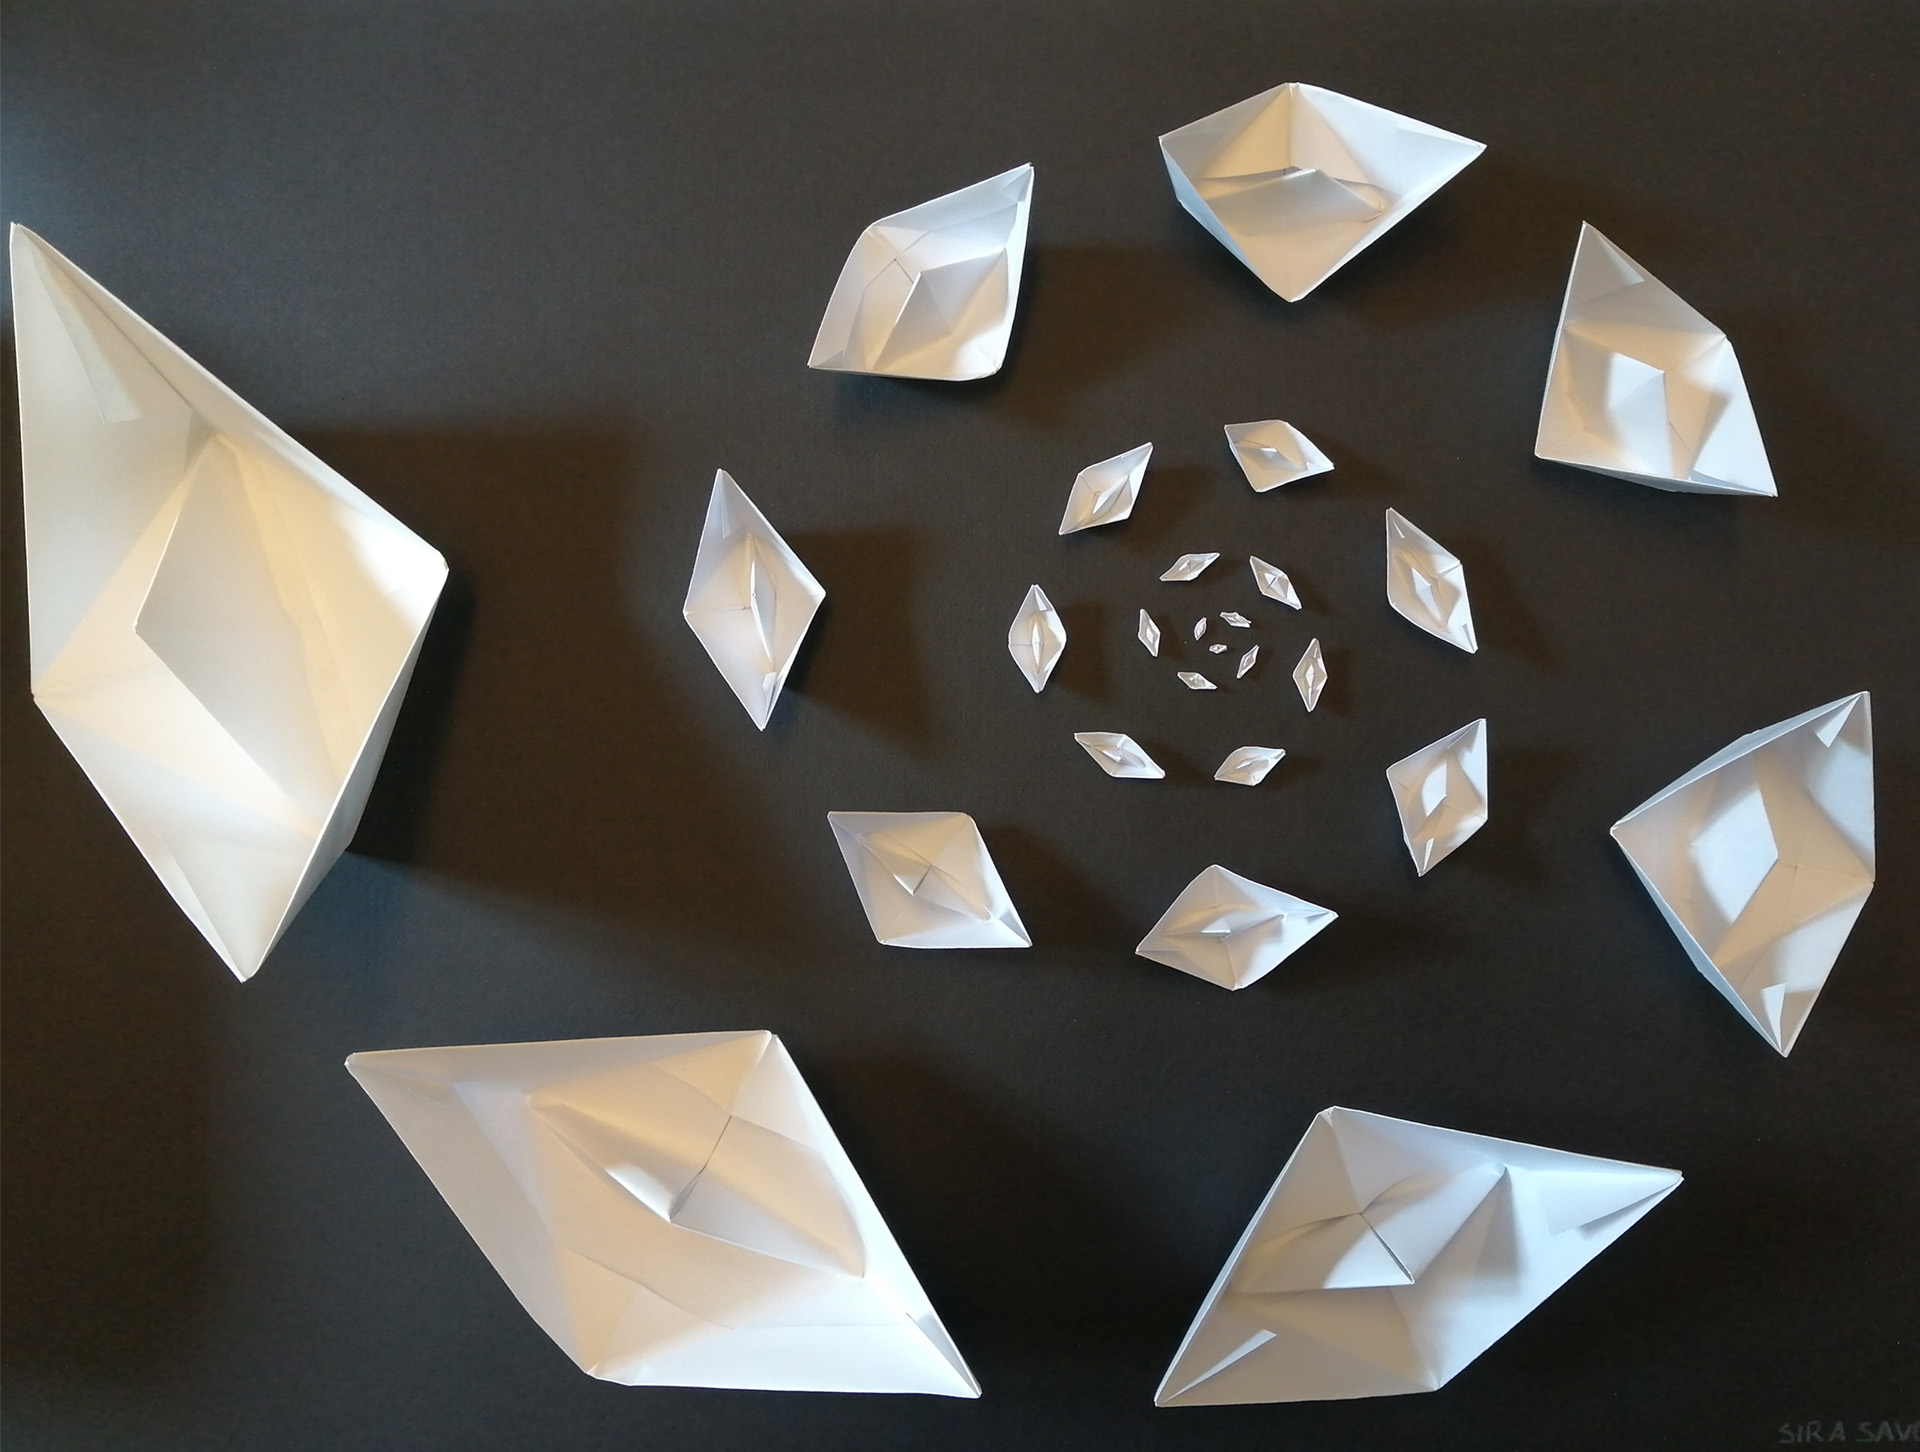 Fotografia di una spirale di barchette di carta